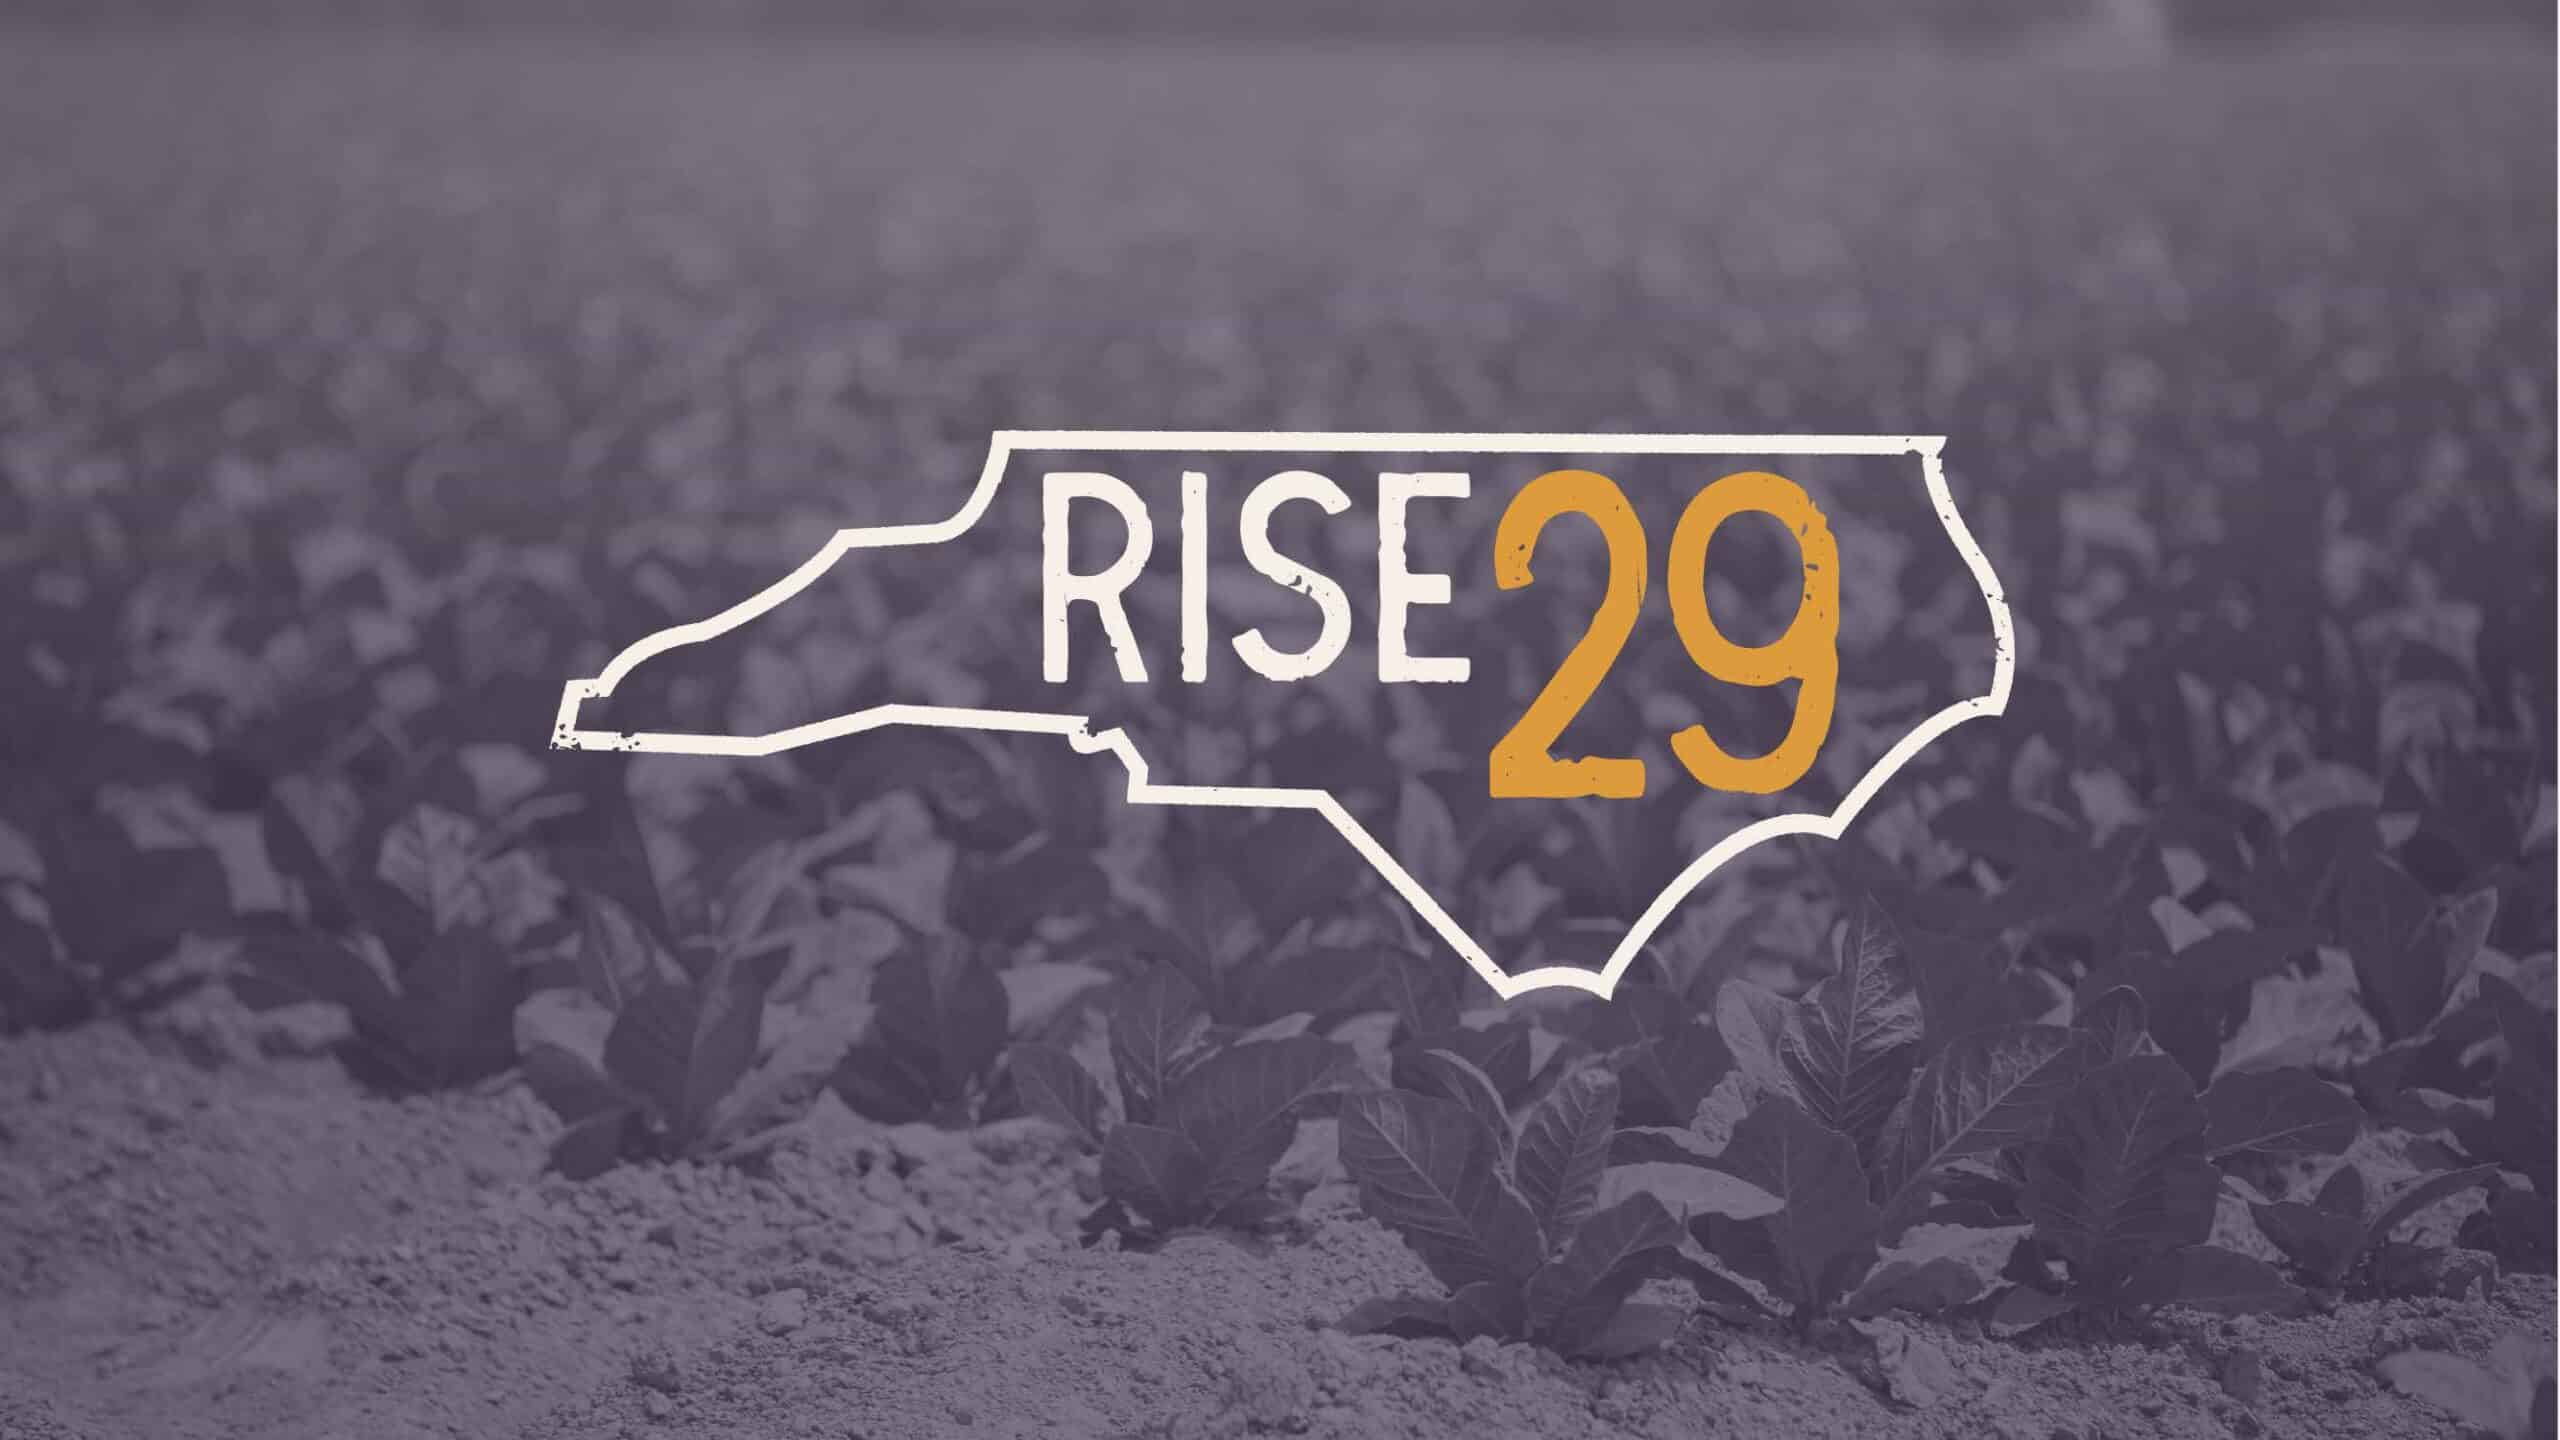 RISE29 grows entrepreneurship in four eastern N.C. counties